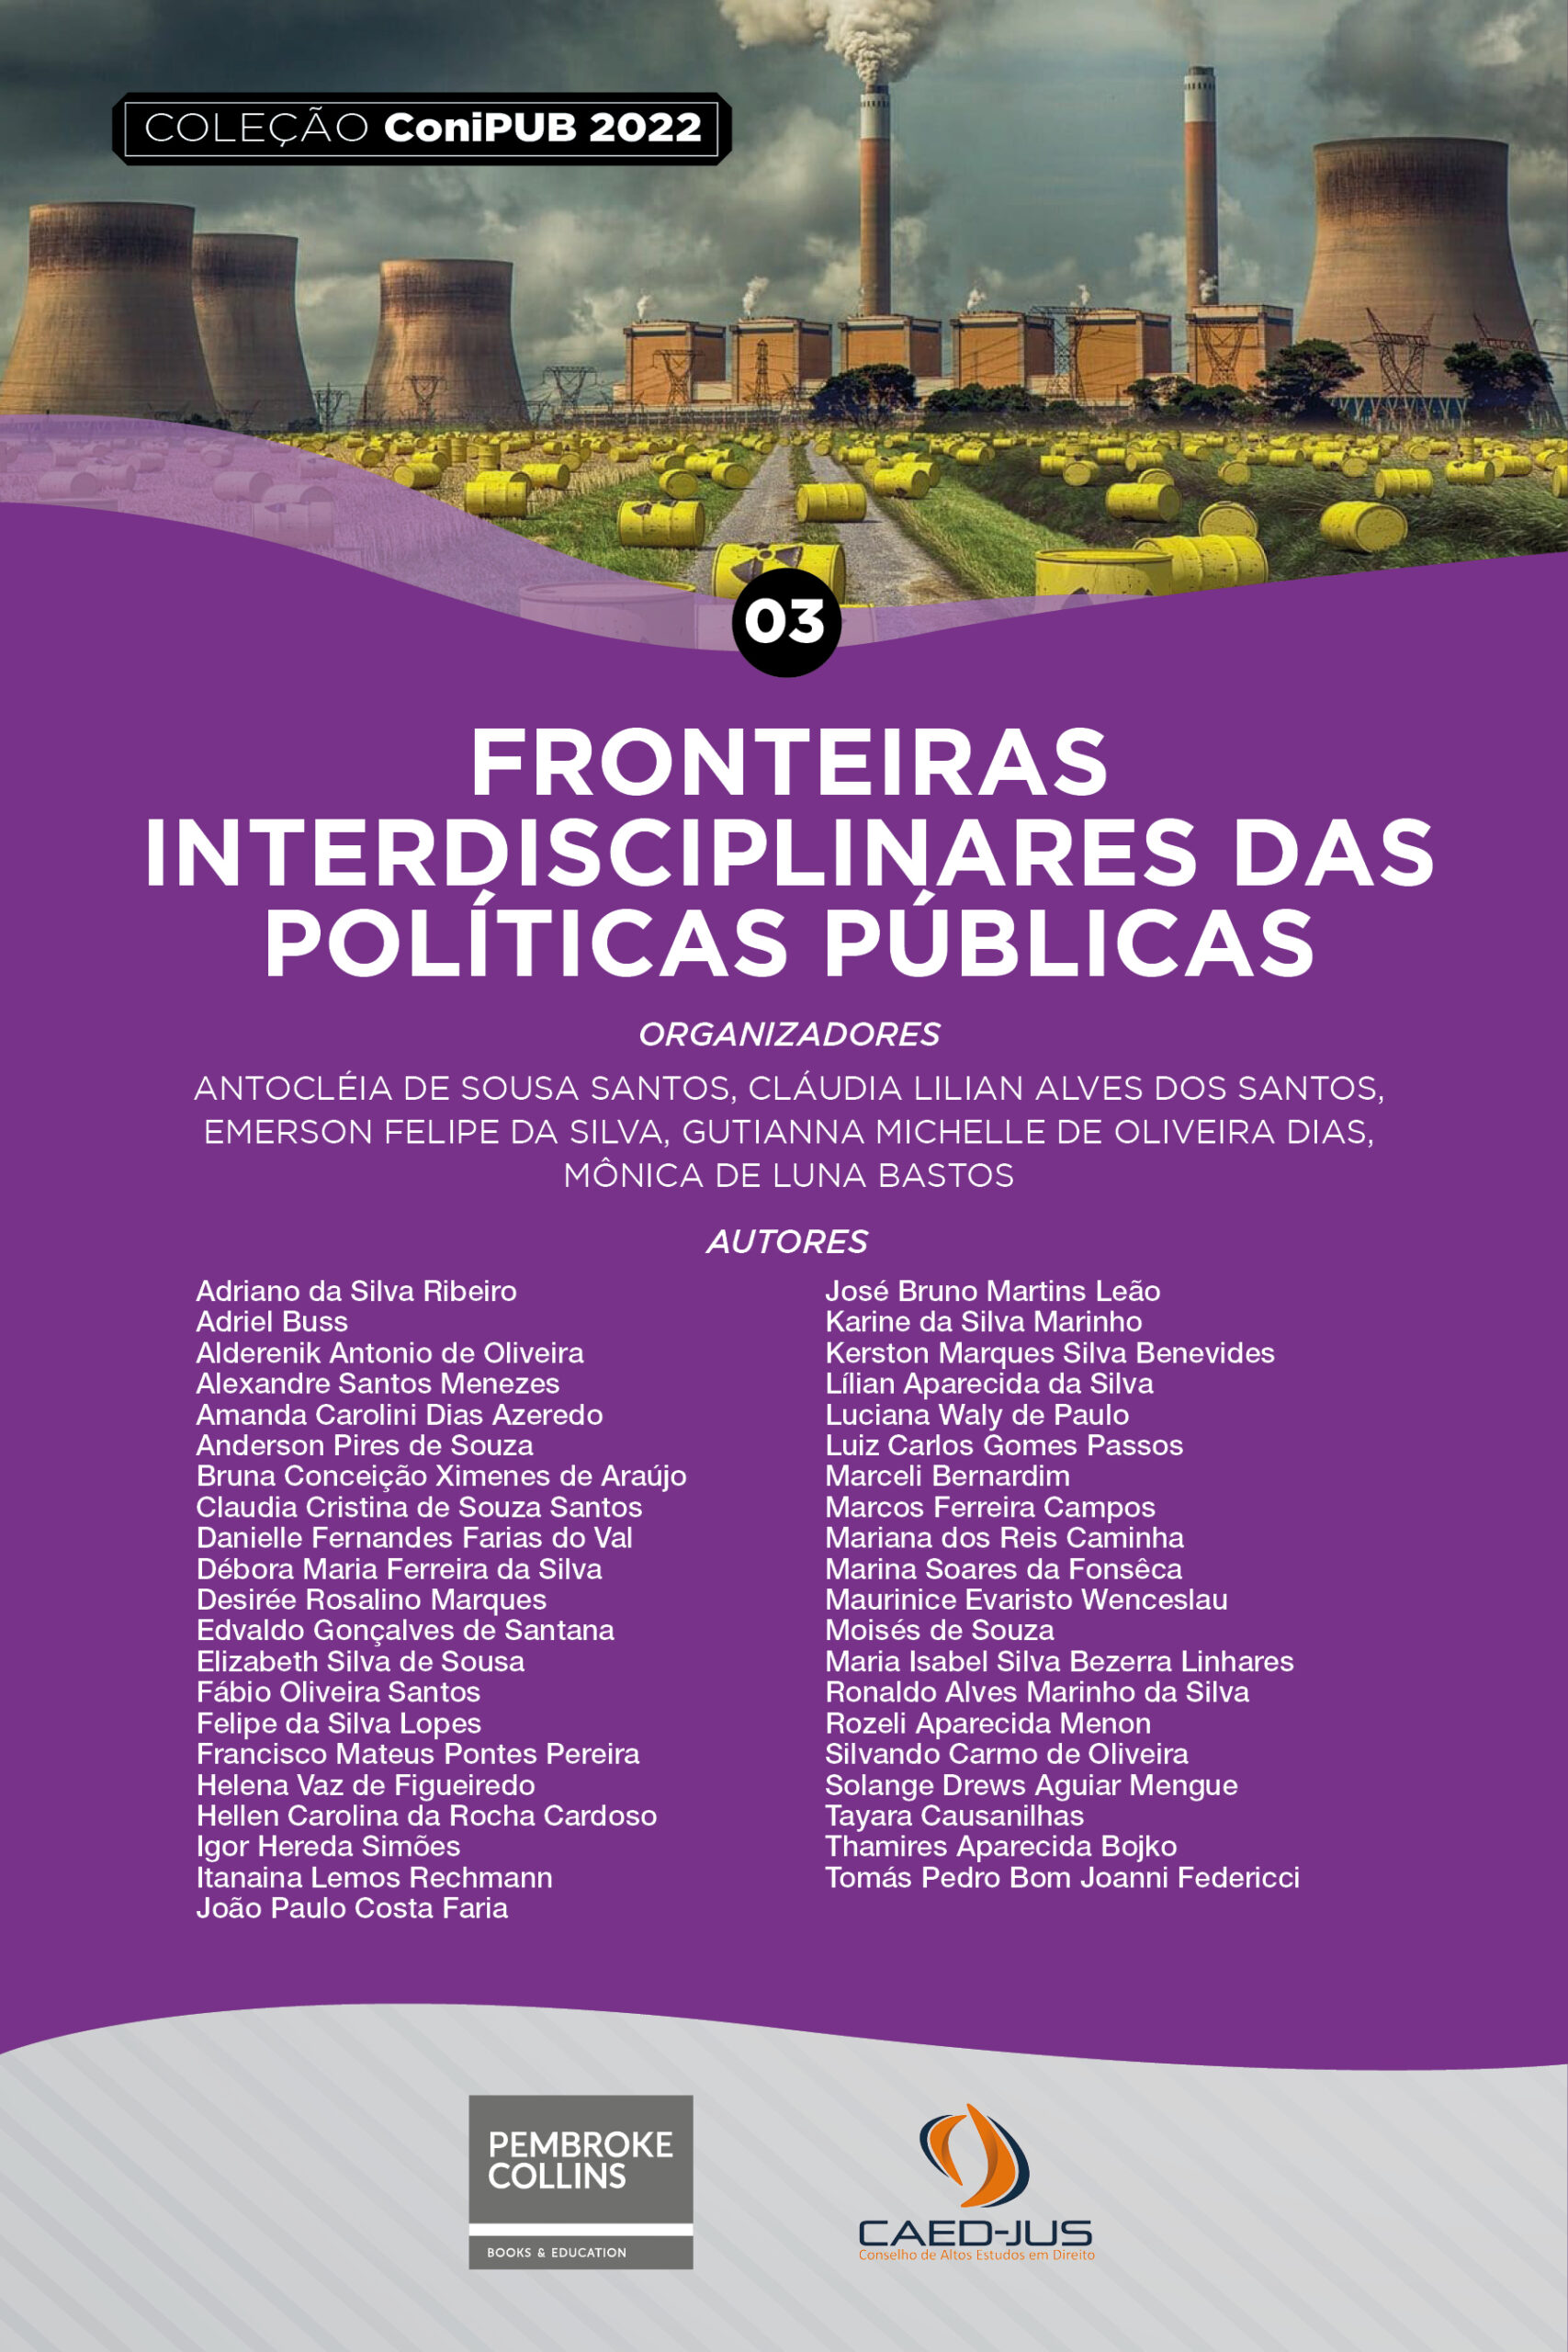 03-CONIPUB2022-FRONTEIRAS-INTERDISCIPLINARES-DAS-POLITICAS-PUBLICAS (2)